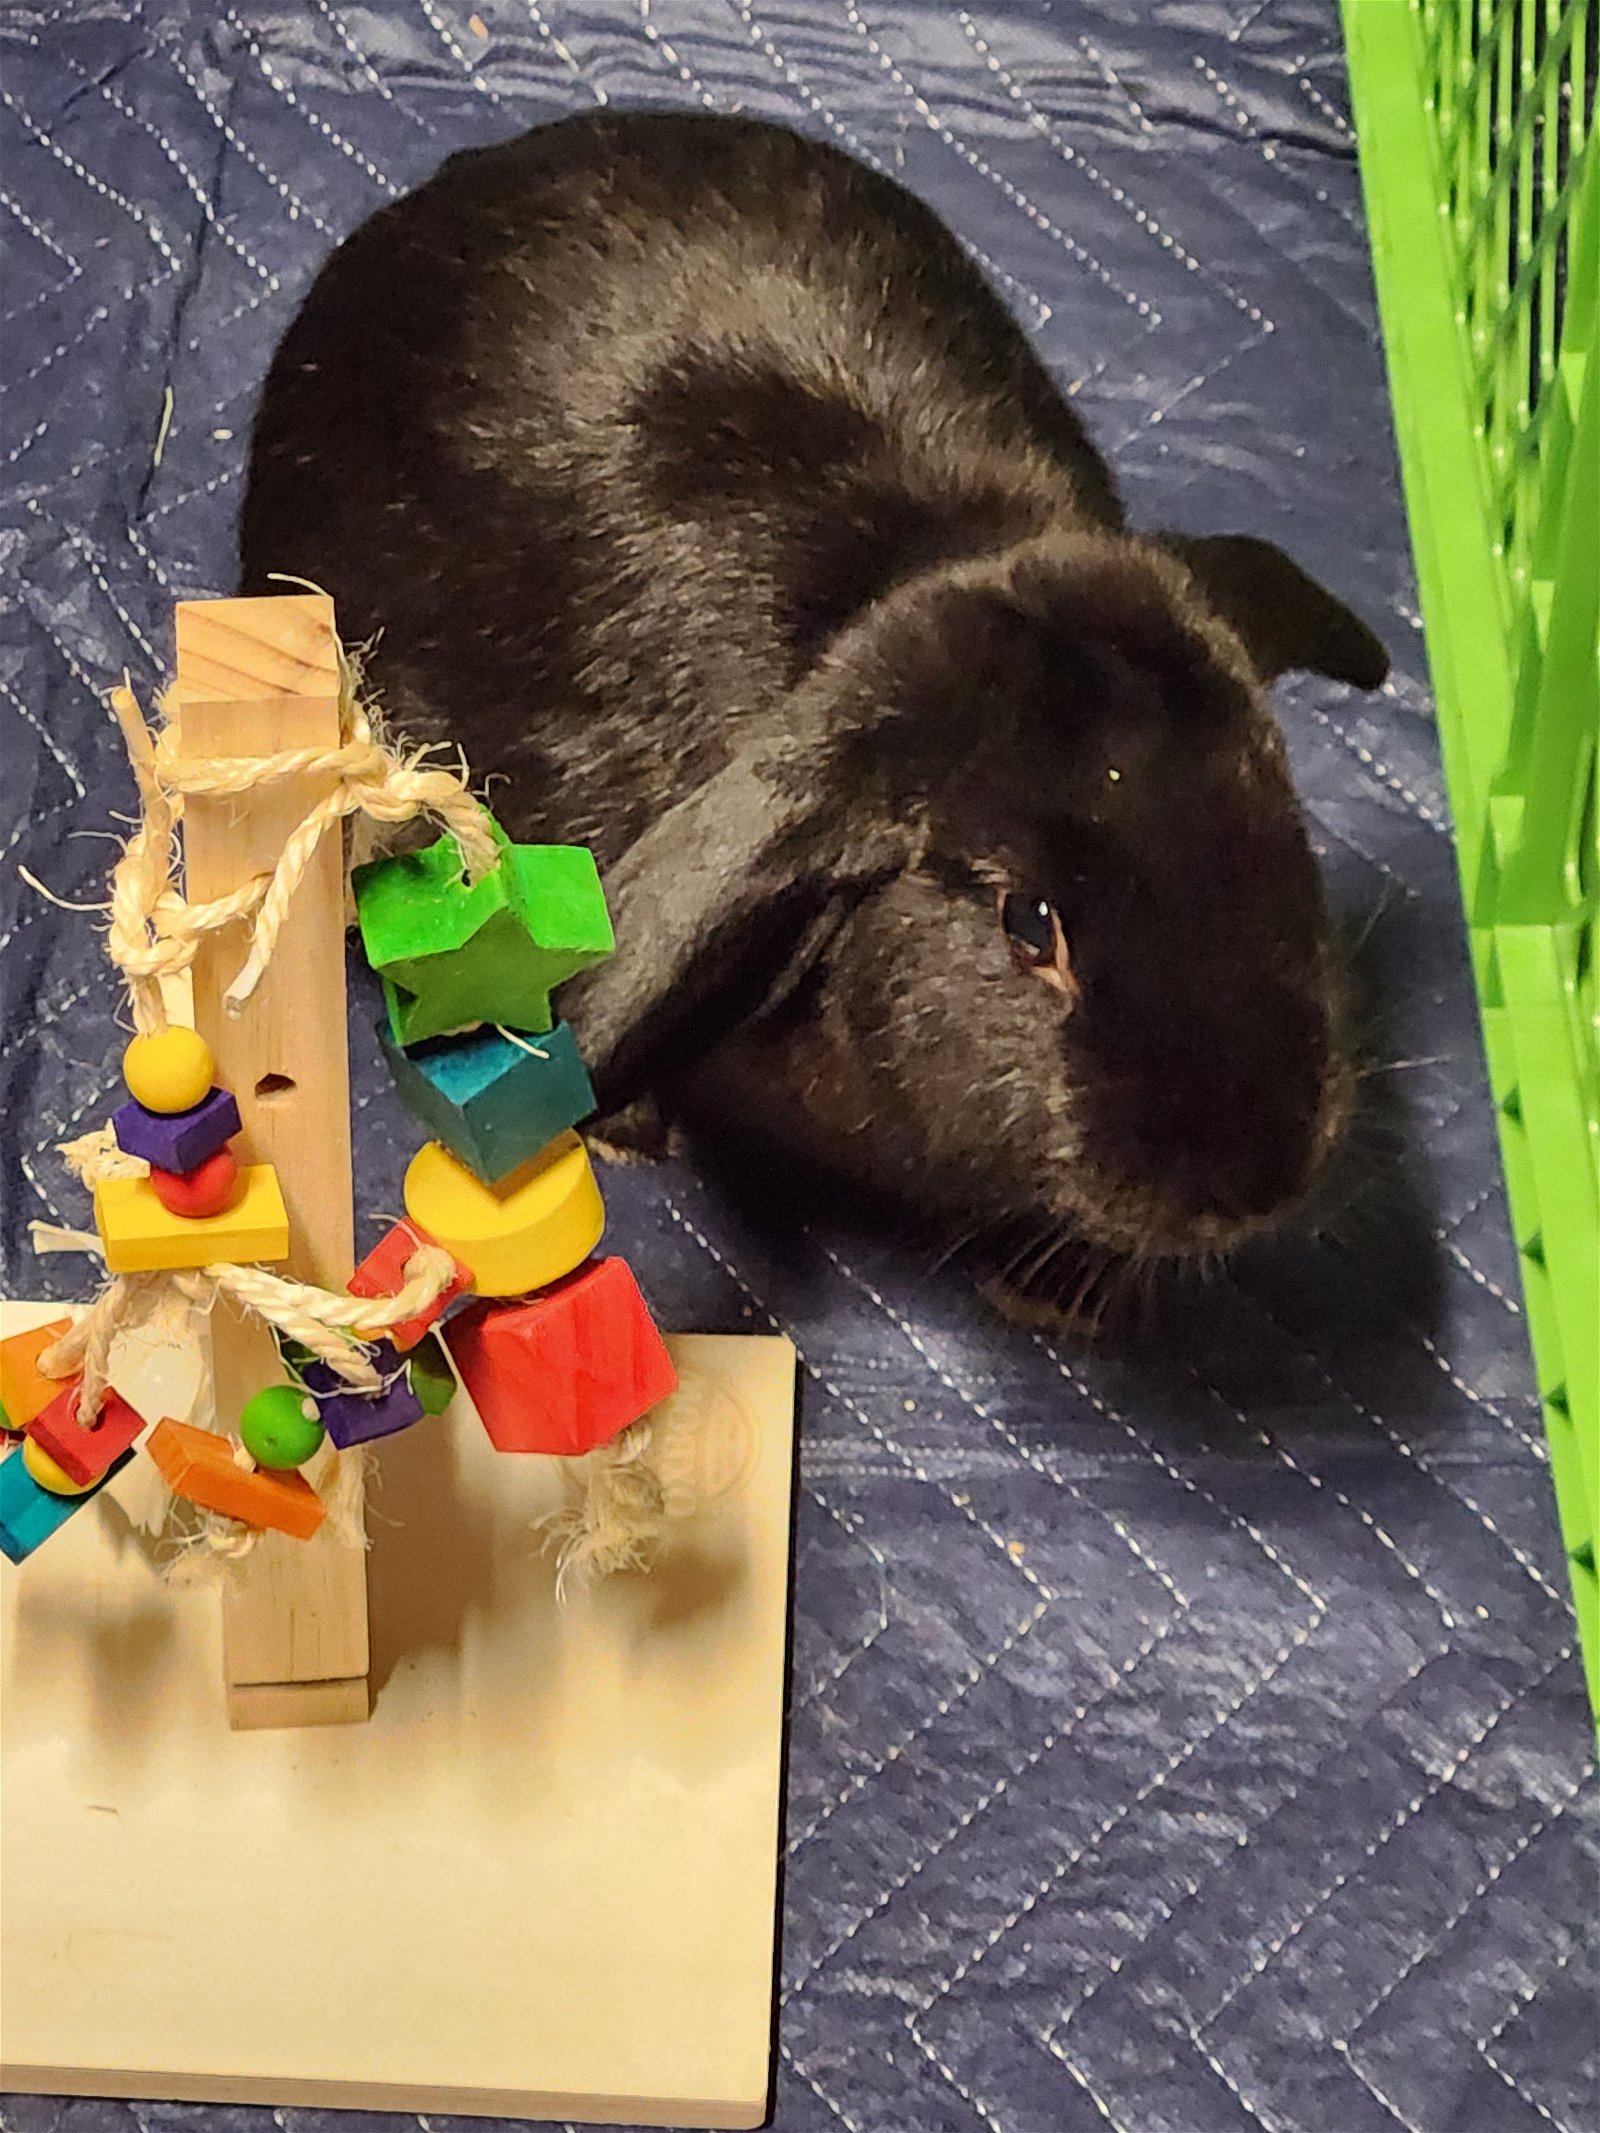 adoptable Rabbit in Philadelphia, PA named Usher